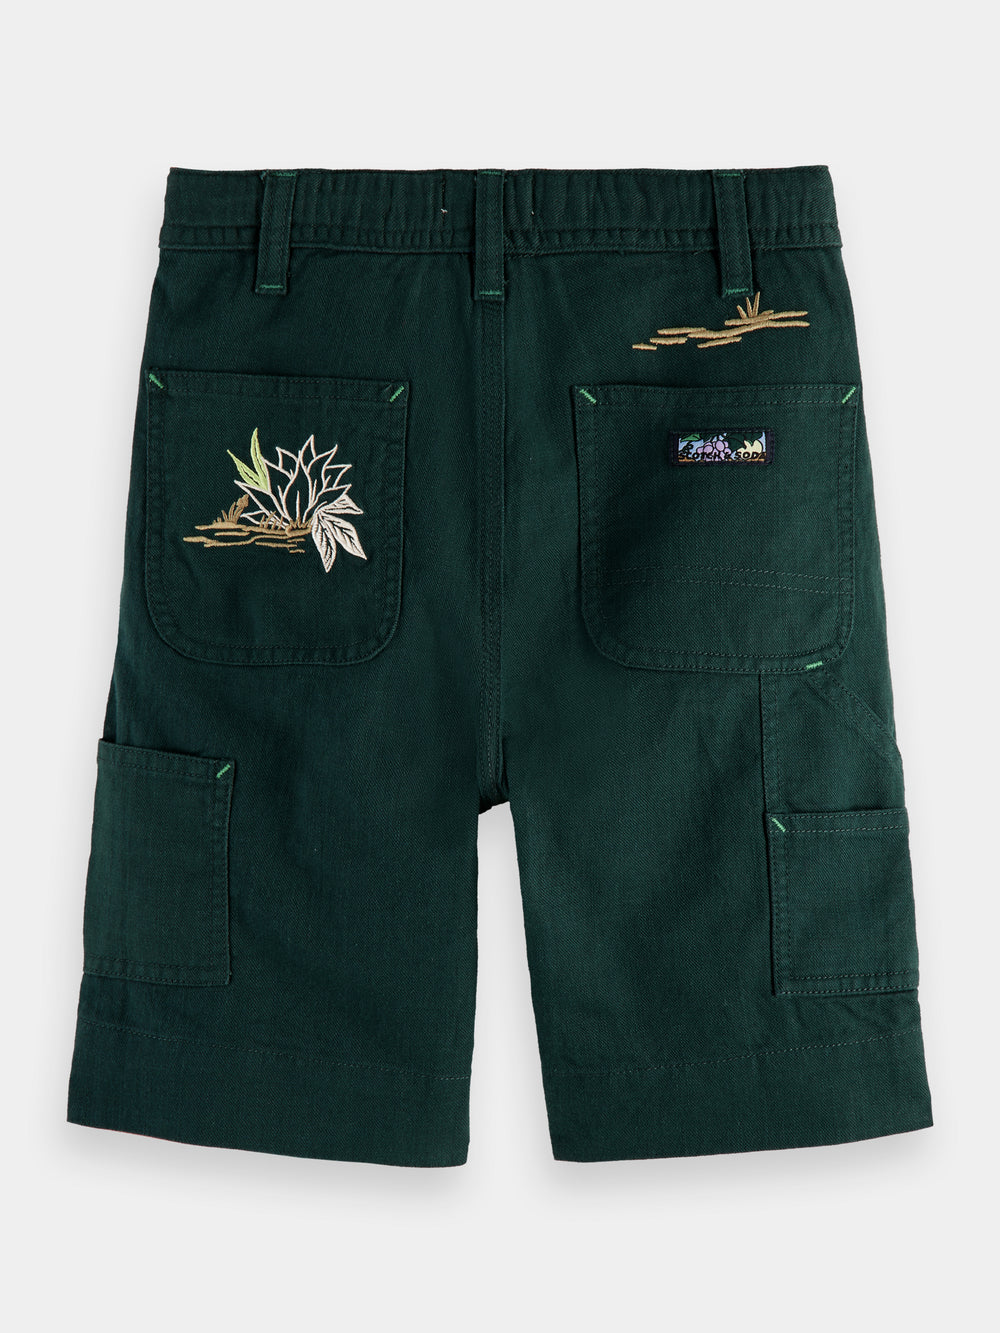 Embroidered artwork linen blend shorts - Scotch & Soda NZ